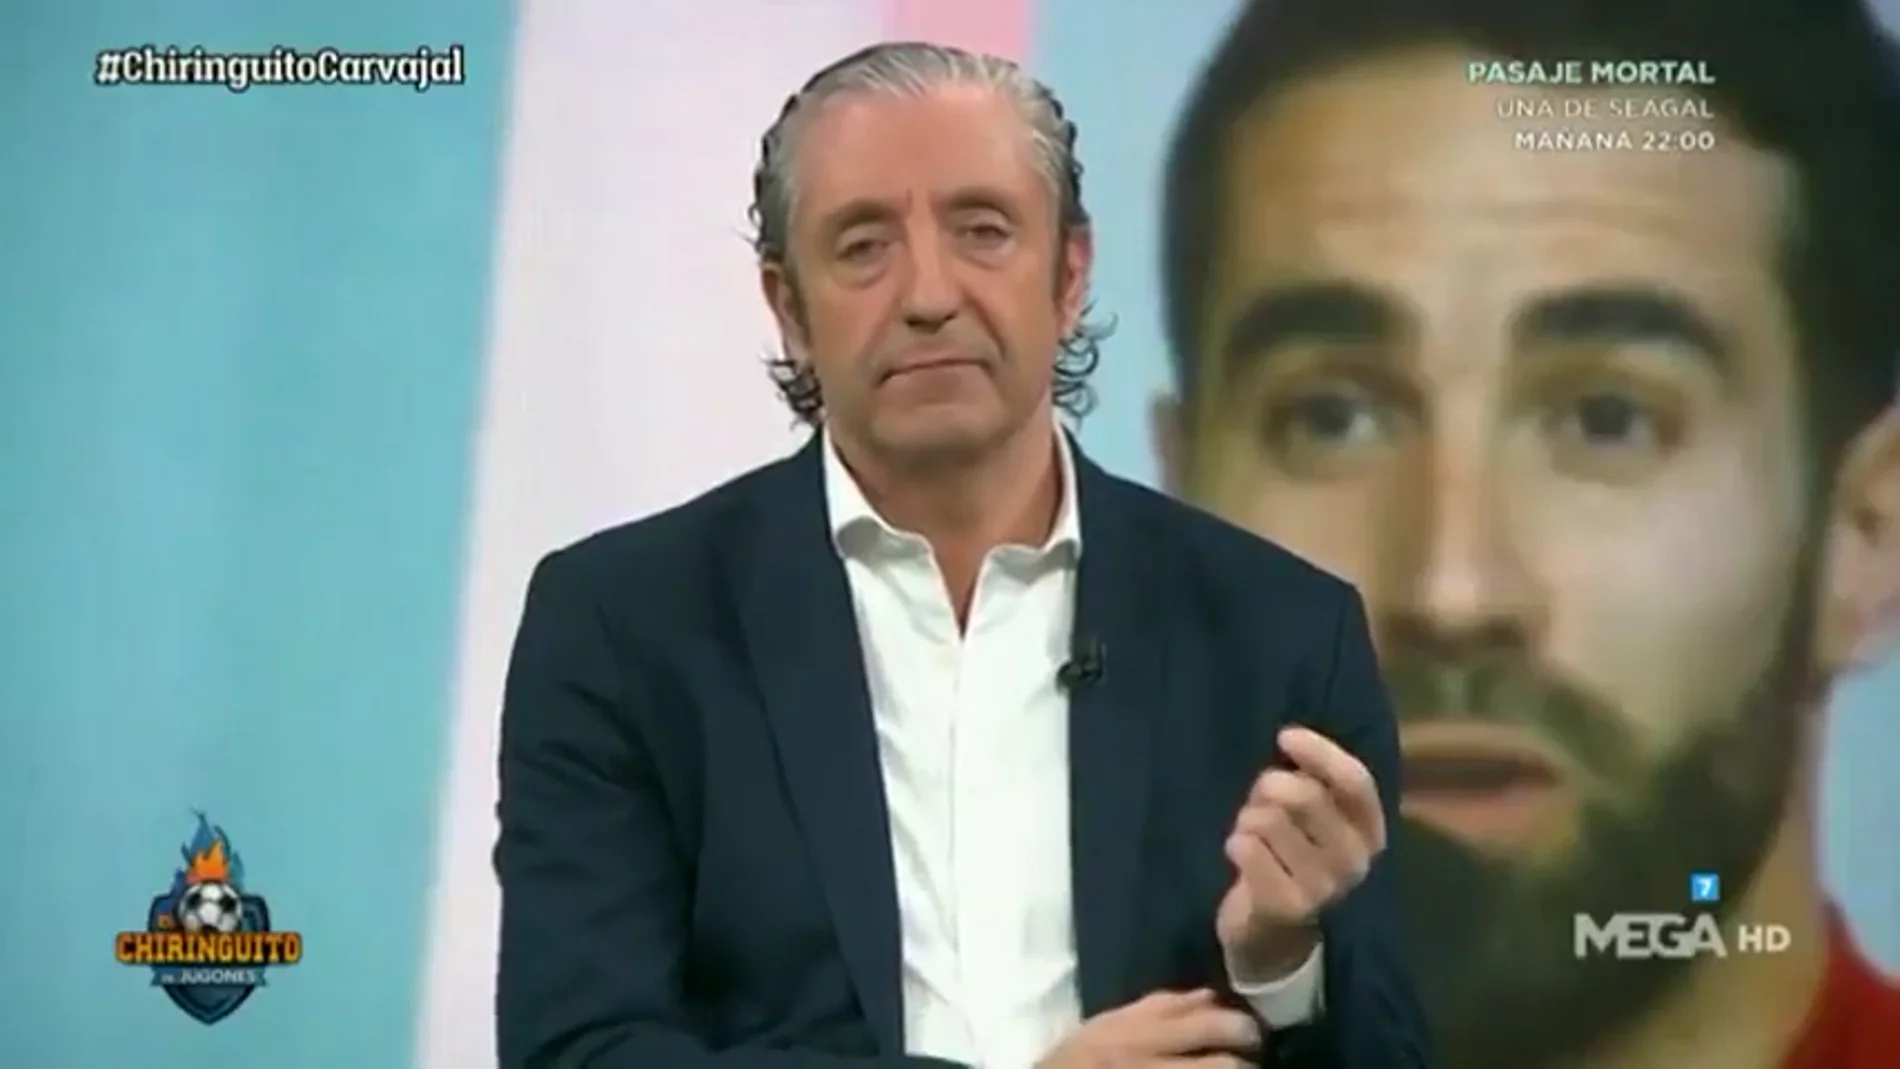 Lo más viral: la cara de Josep Pedrerol tras decir Carvajal que "no merece la pena responder" una pregunta de Juanfe Sanz